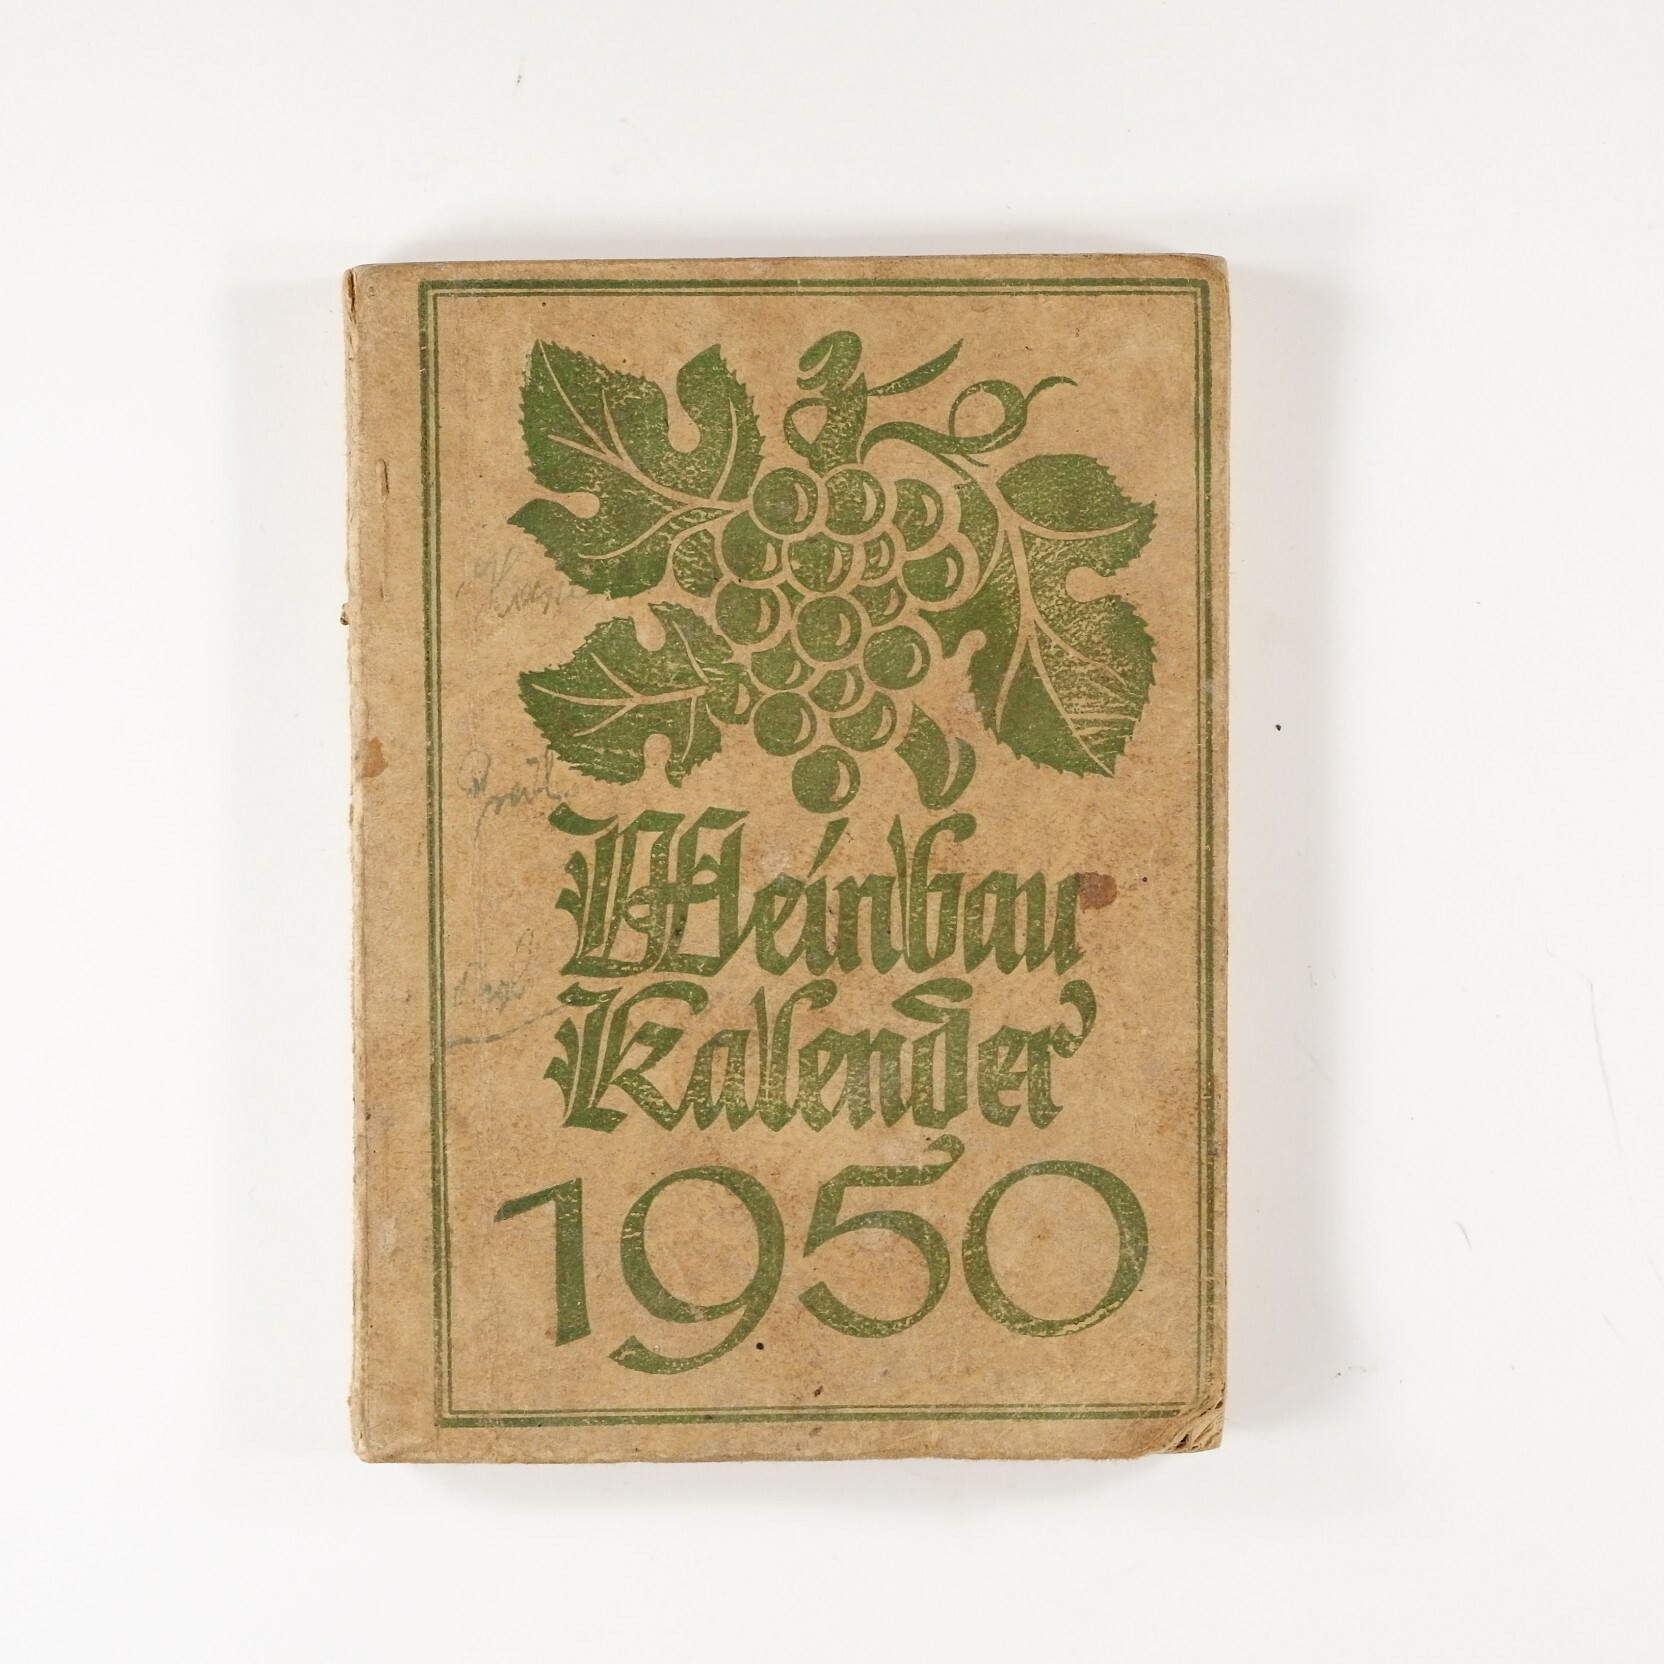 Weinbau Kalender 1950 (Volkskunde- und Freilichtmuseum Roscheider Hof RR-F)